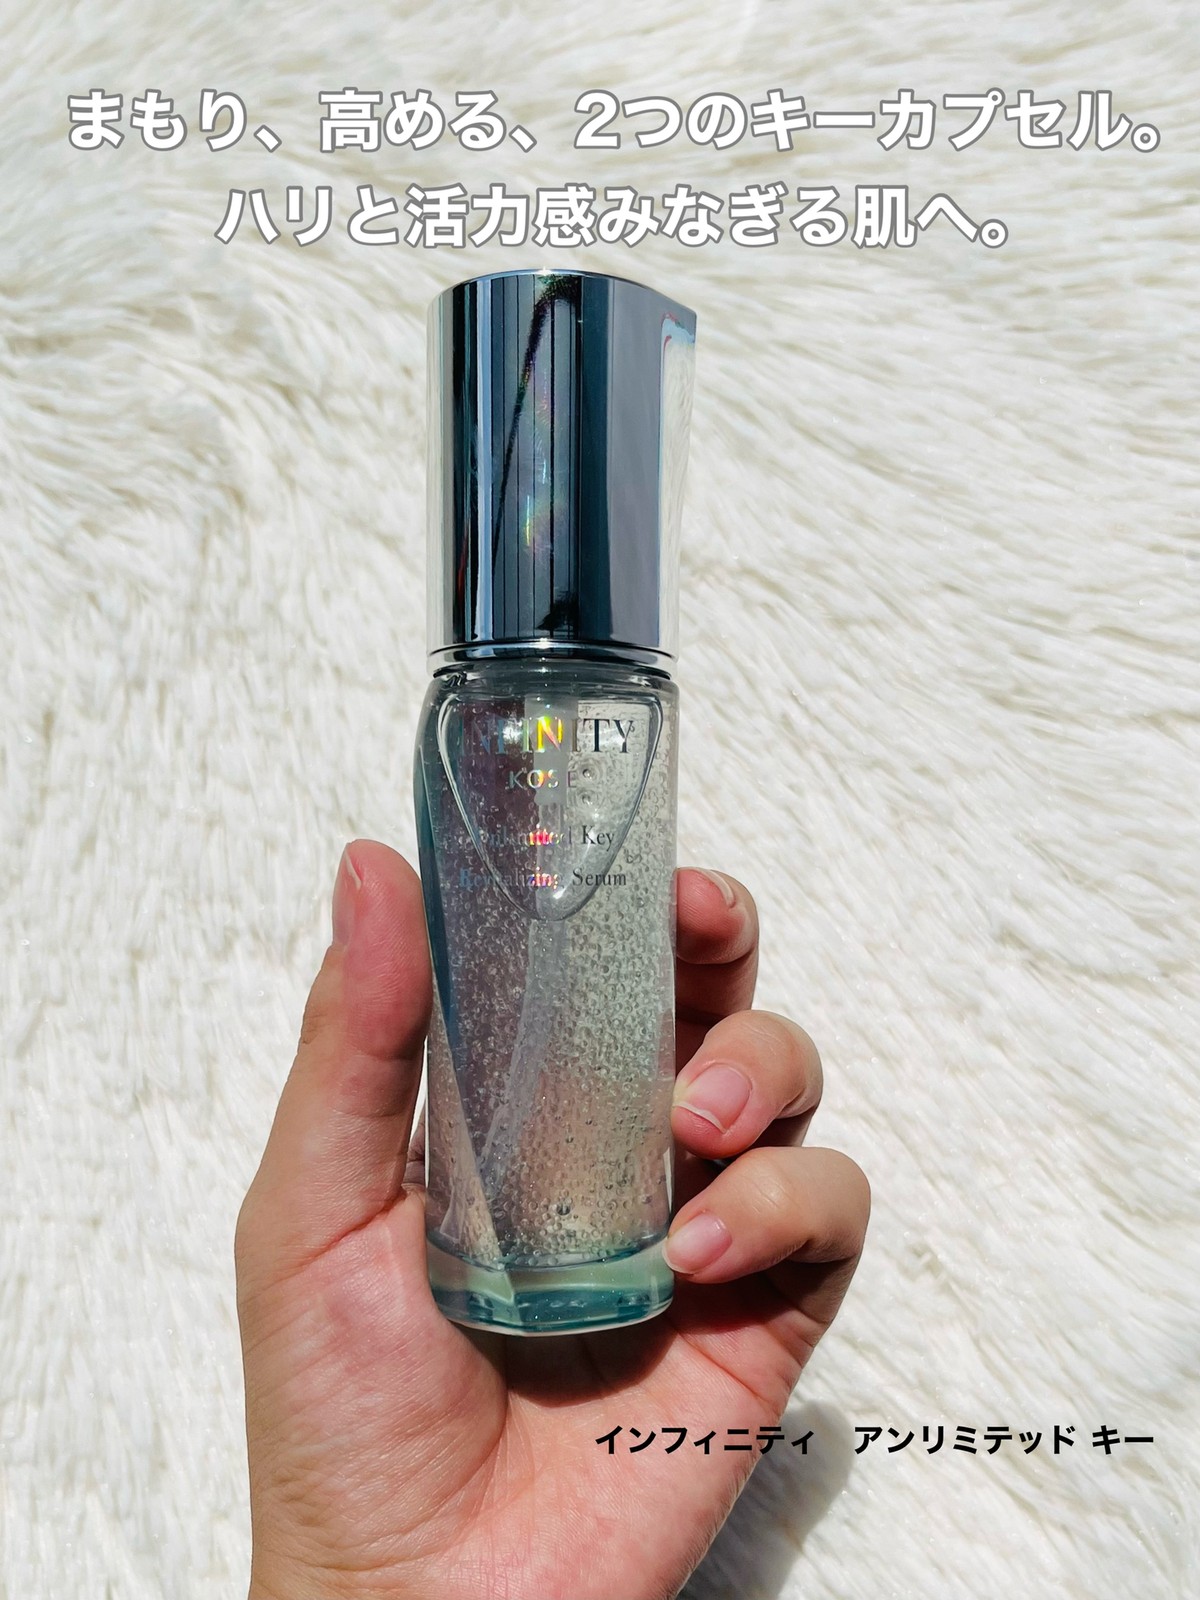 いラインアップ 8月21日発売　コーセー　KOSE インフィニティ　アンリミテッド キー　美容液 美容液